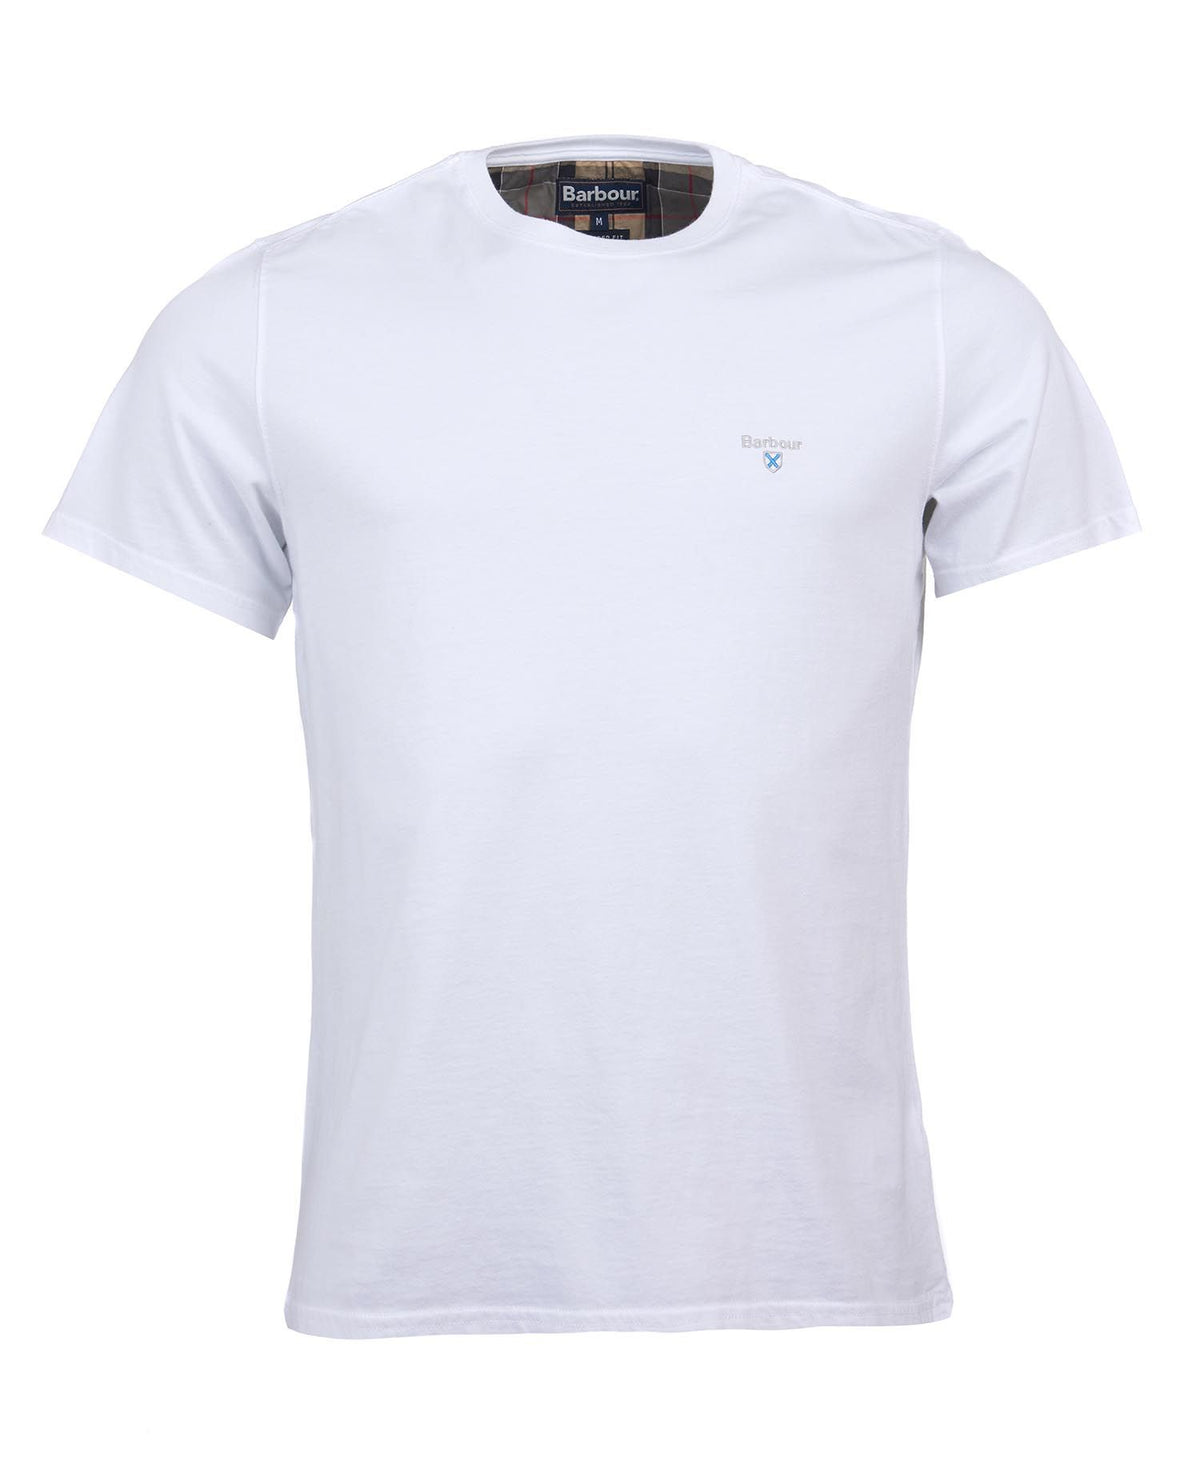 Barbour Aboyne men's white T-Shirt